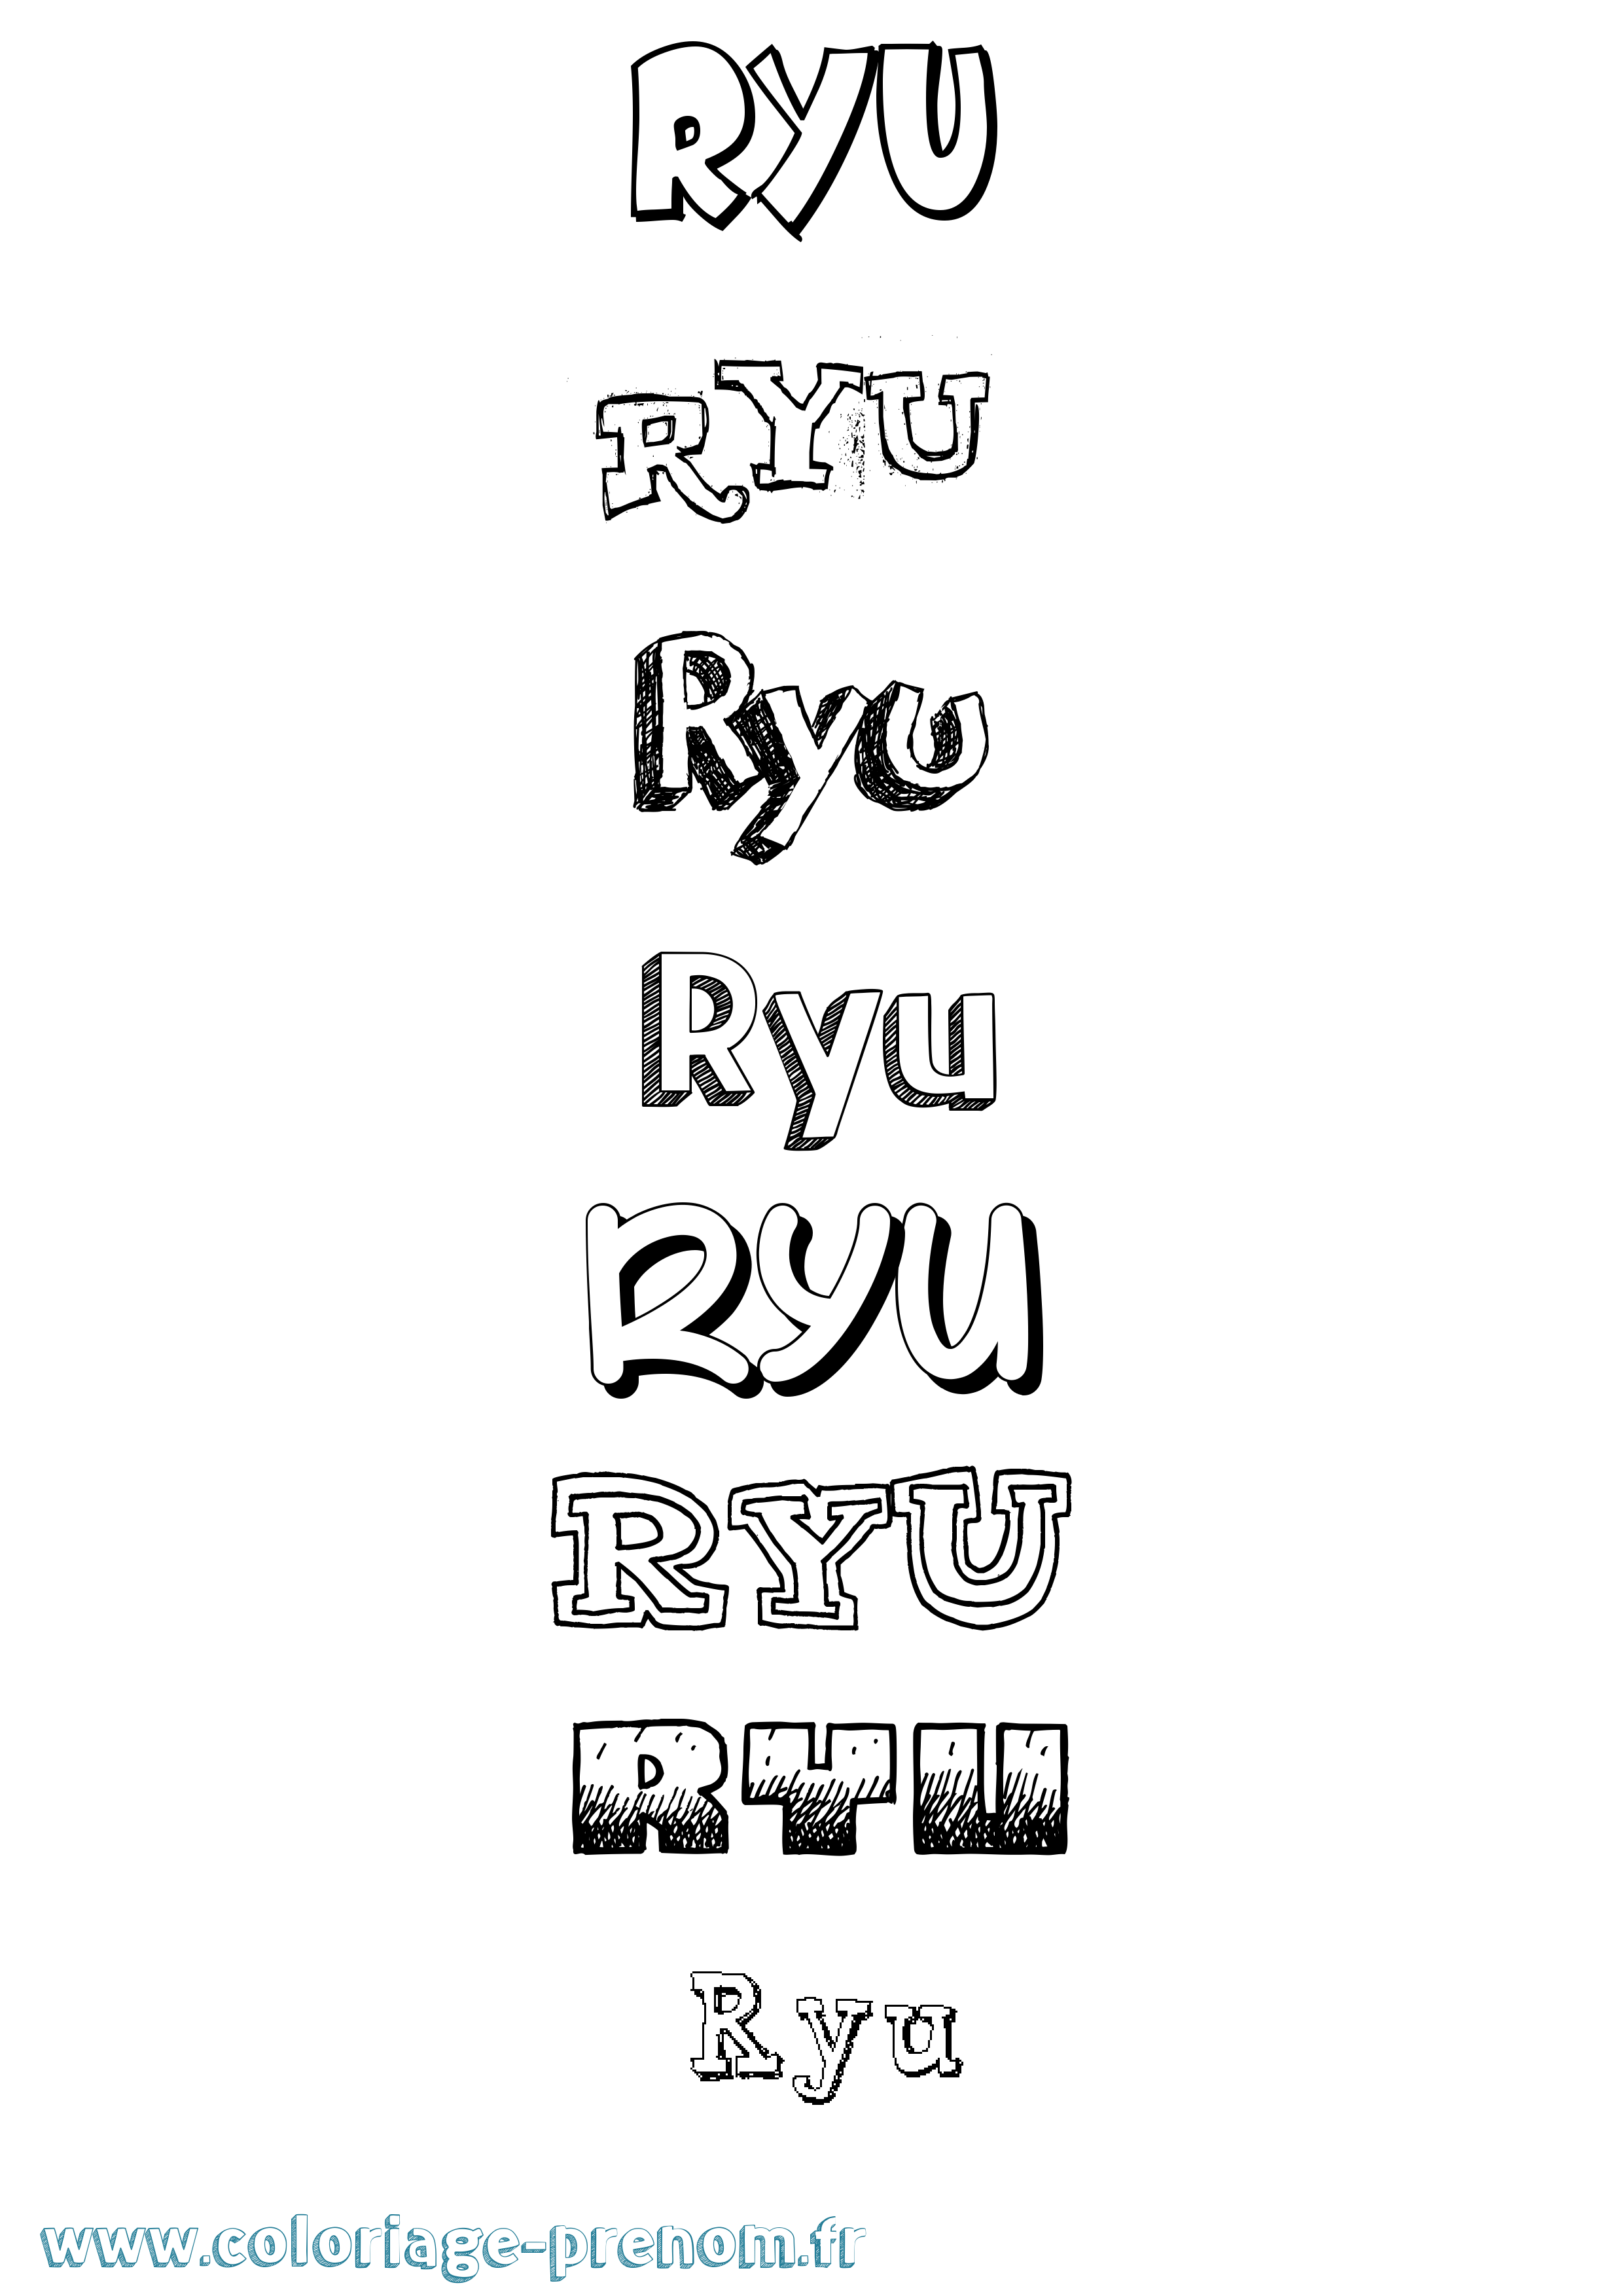 Coloriage prénom Ryu Dessiné